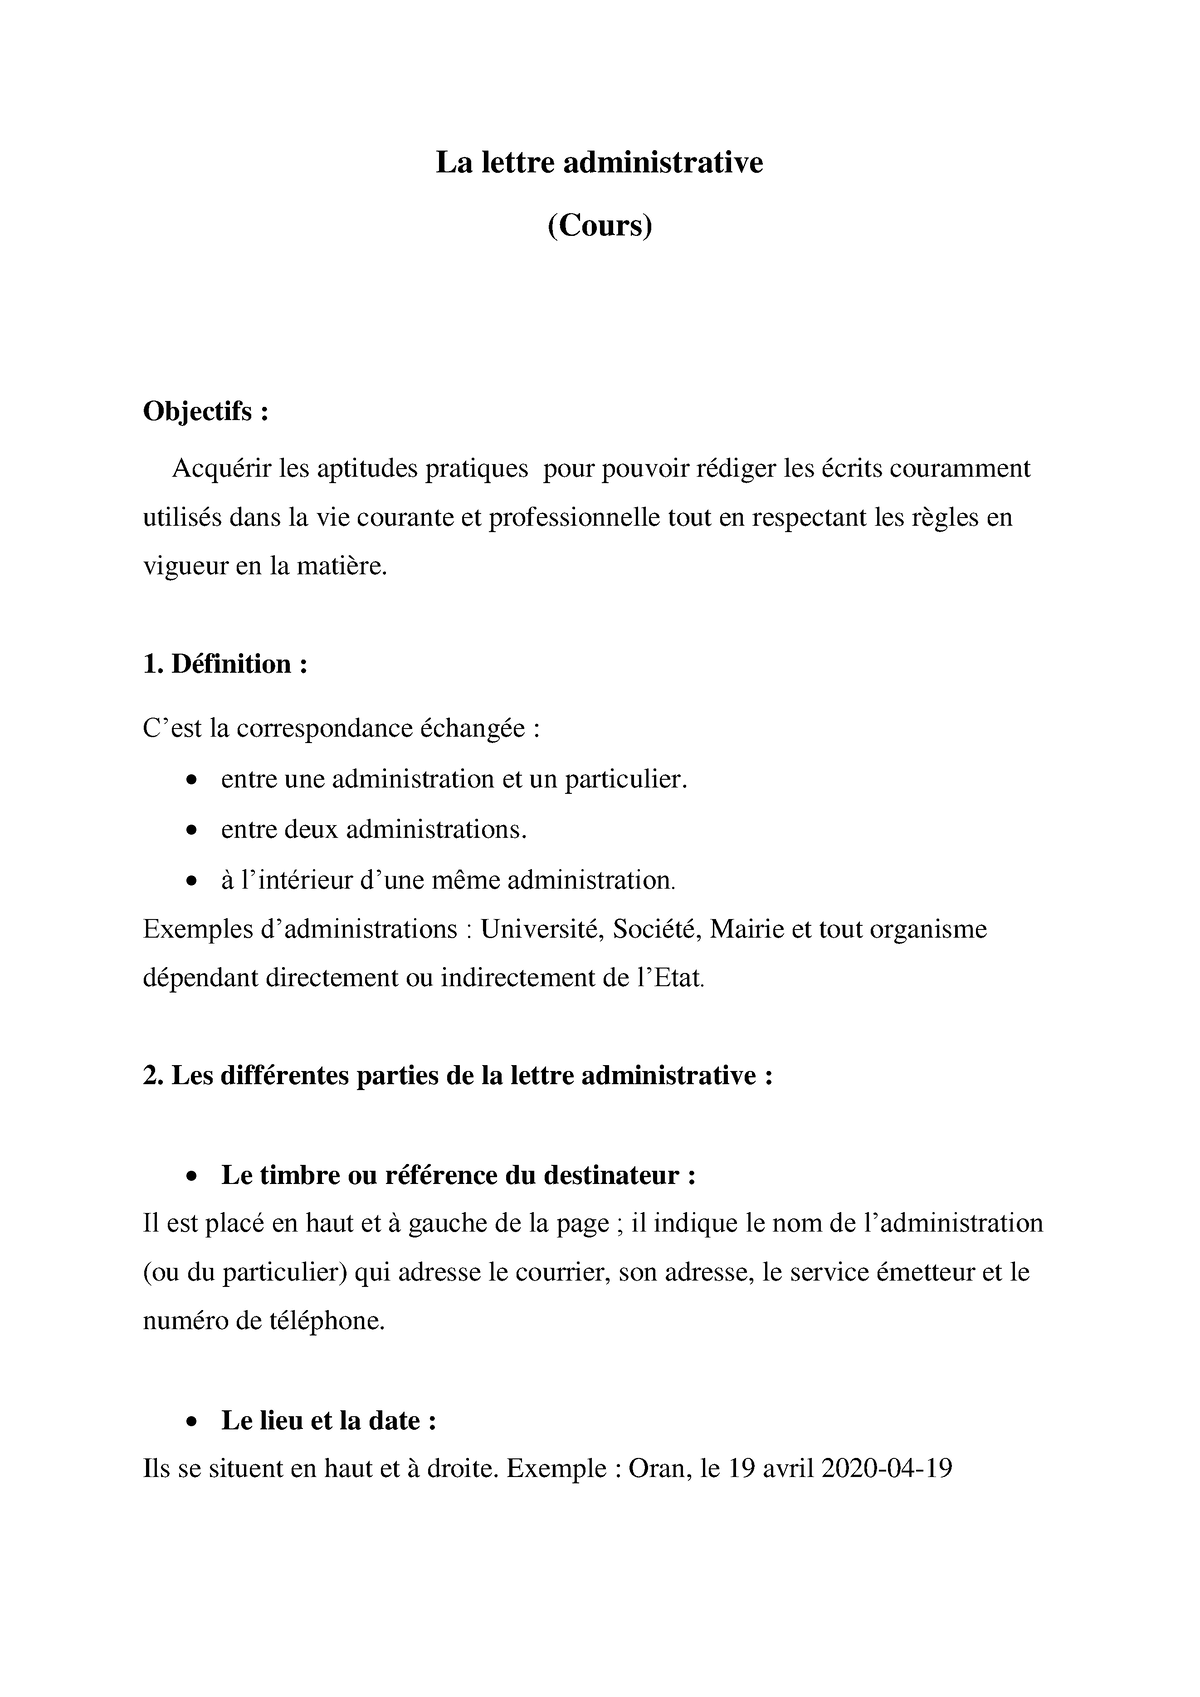 La lettre administrative (Cours) - La lettre administrative (Cours)  Objectifs : Acquérir les - Studocu